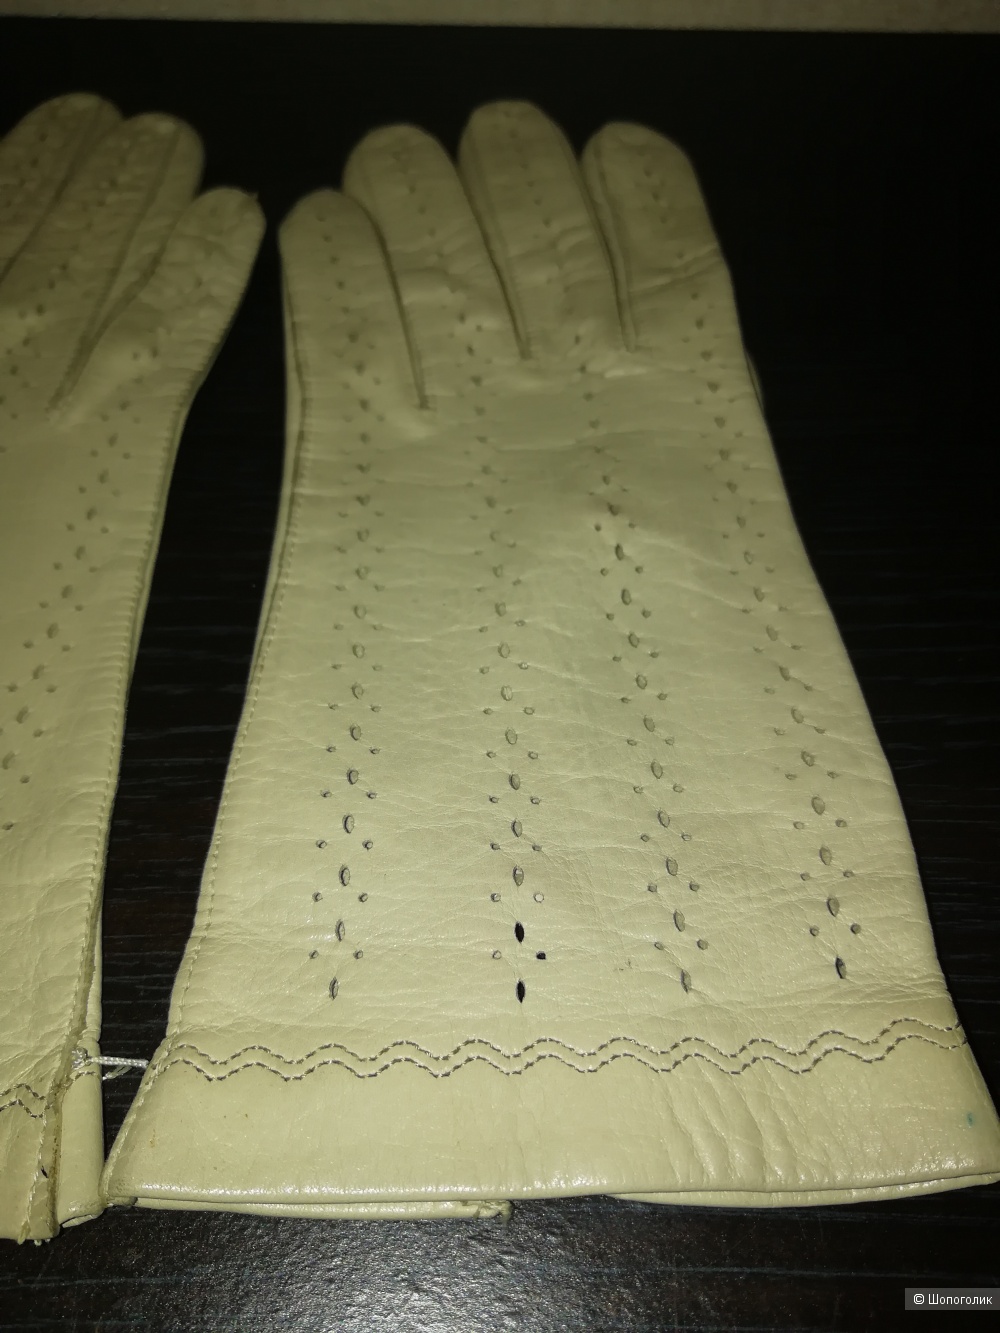 Женские классические перчатки из мягкой гладкой лайковой кожи ягненка, размер S.